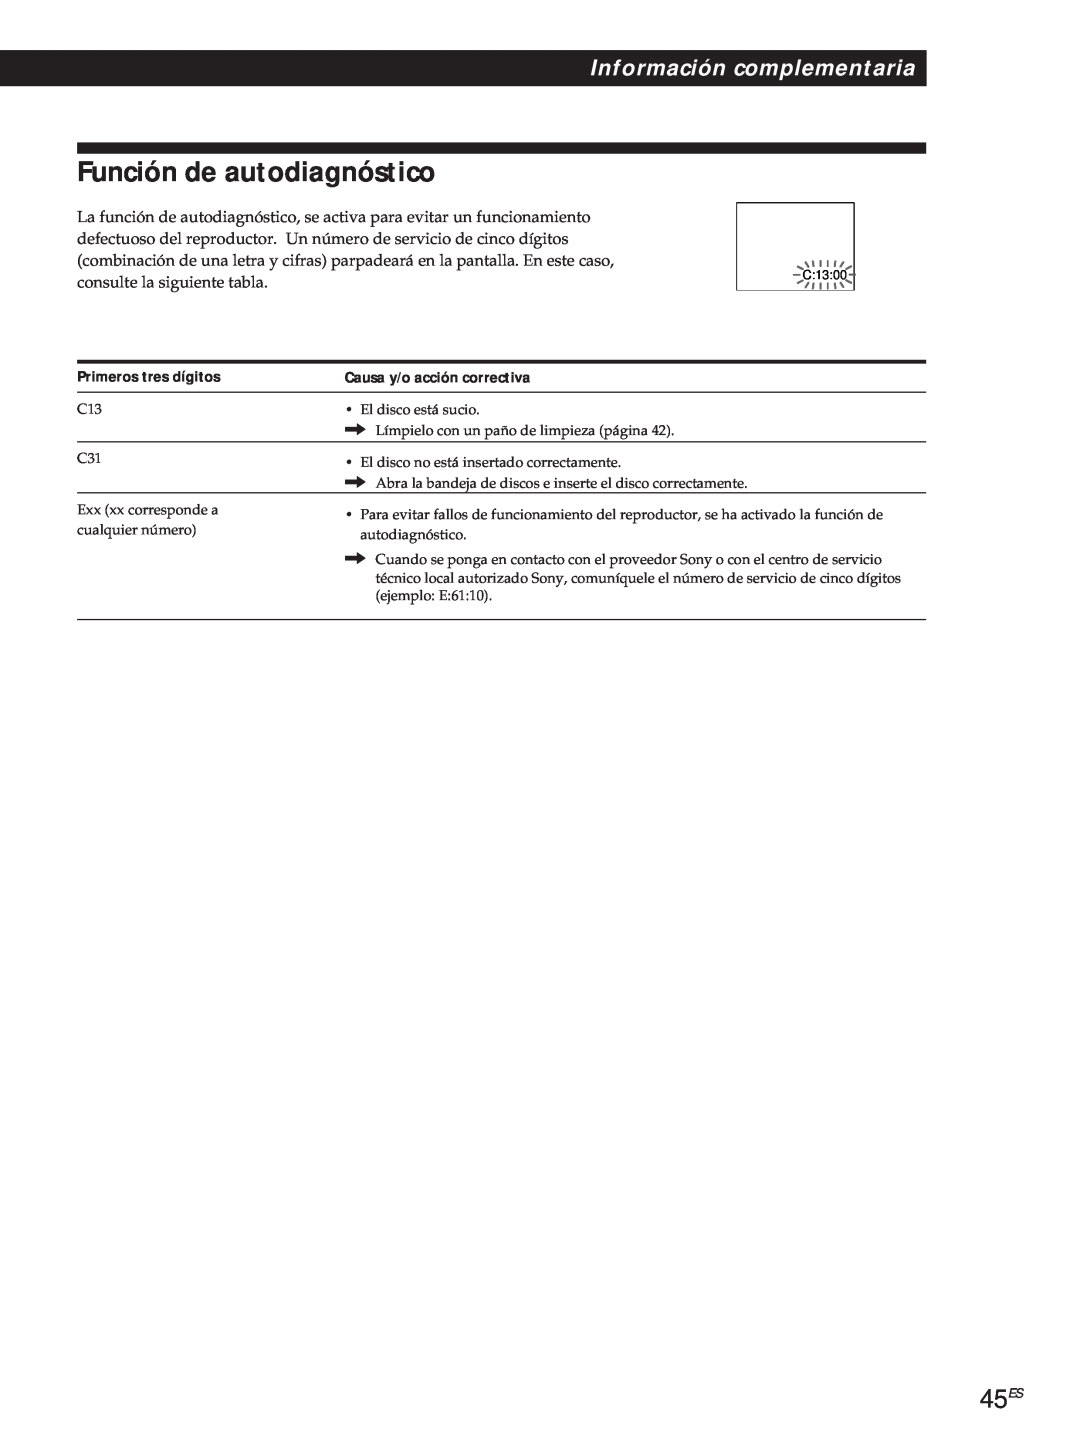 Sony DVP-S500D manual Función de autodiagnóstico, 45ES, Información complementaria, Primeros tres dígitos 